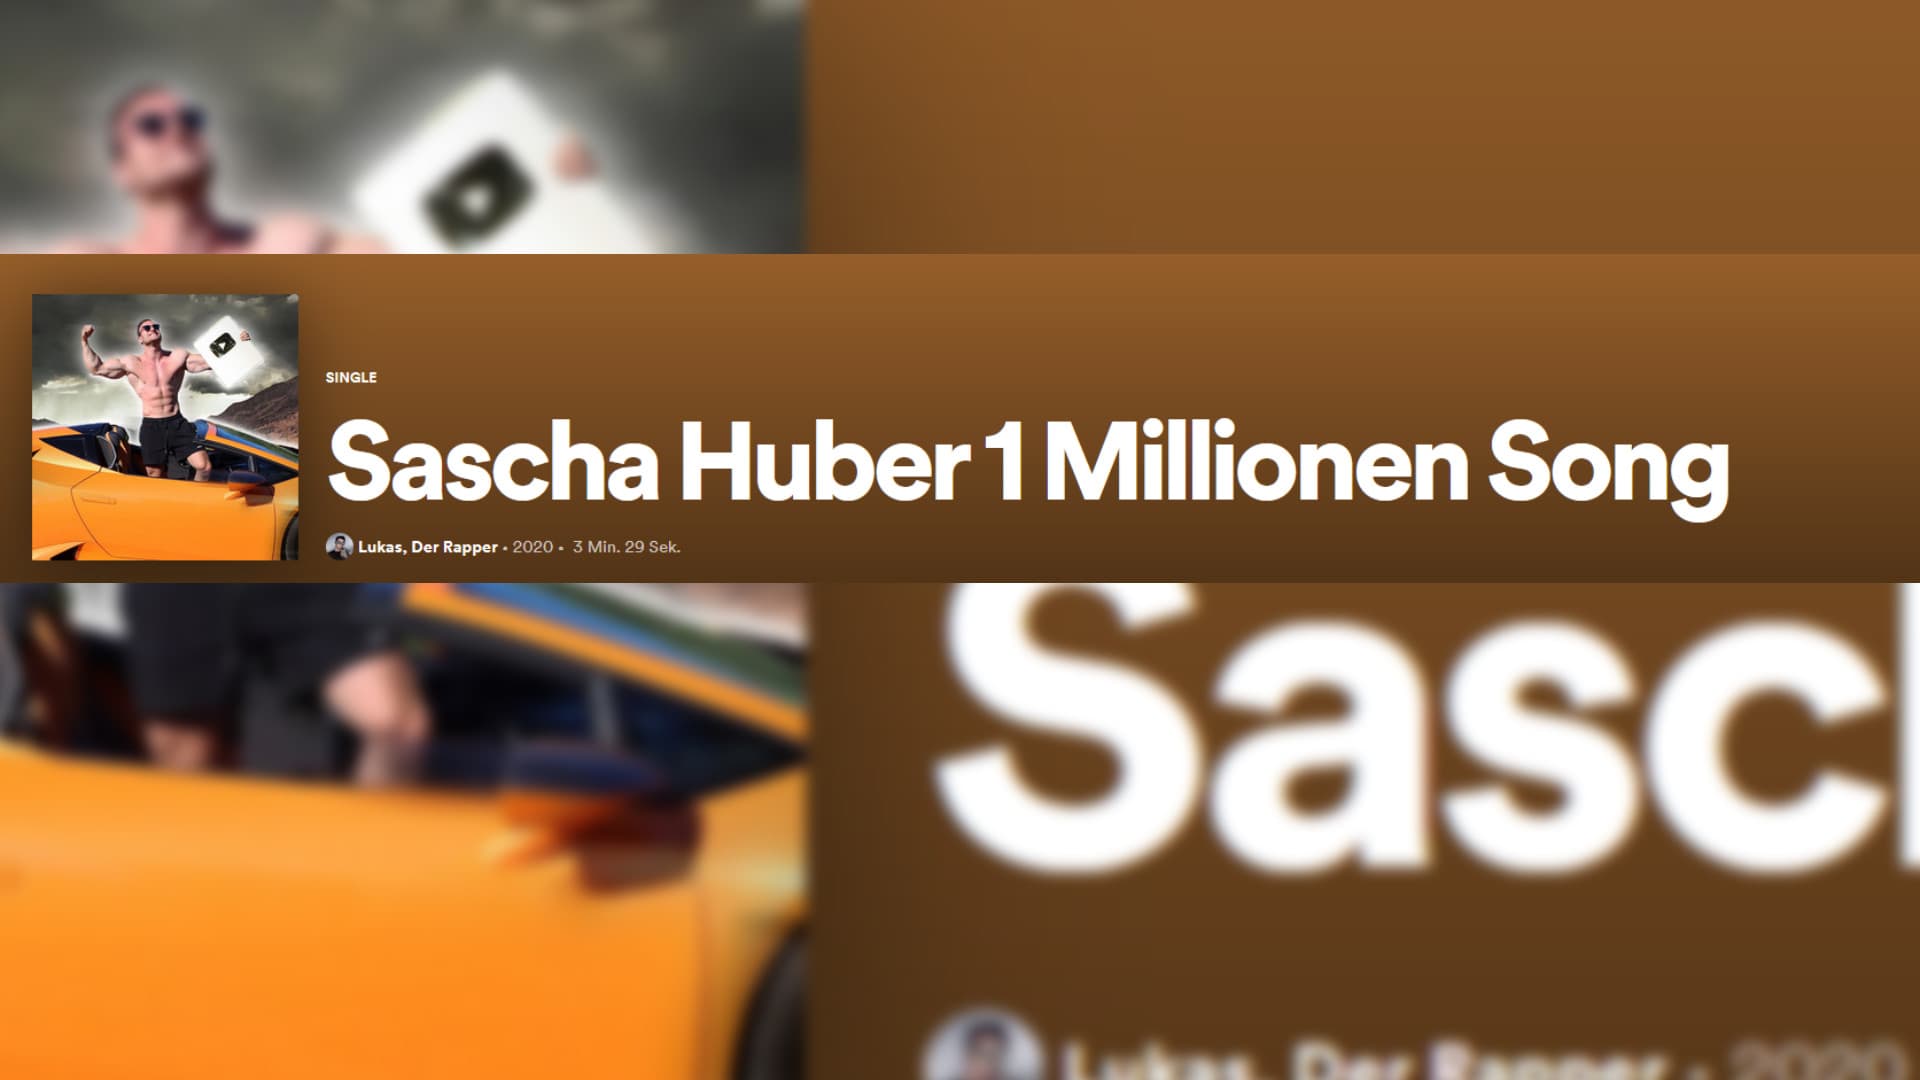 Bild zum Thema “Sascha Huber 1 Millionen Song” von Lukas, Der Rapper